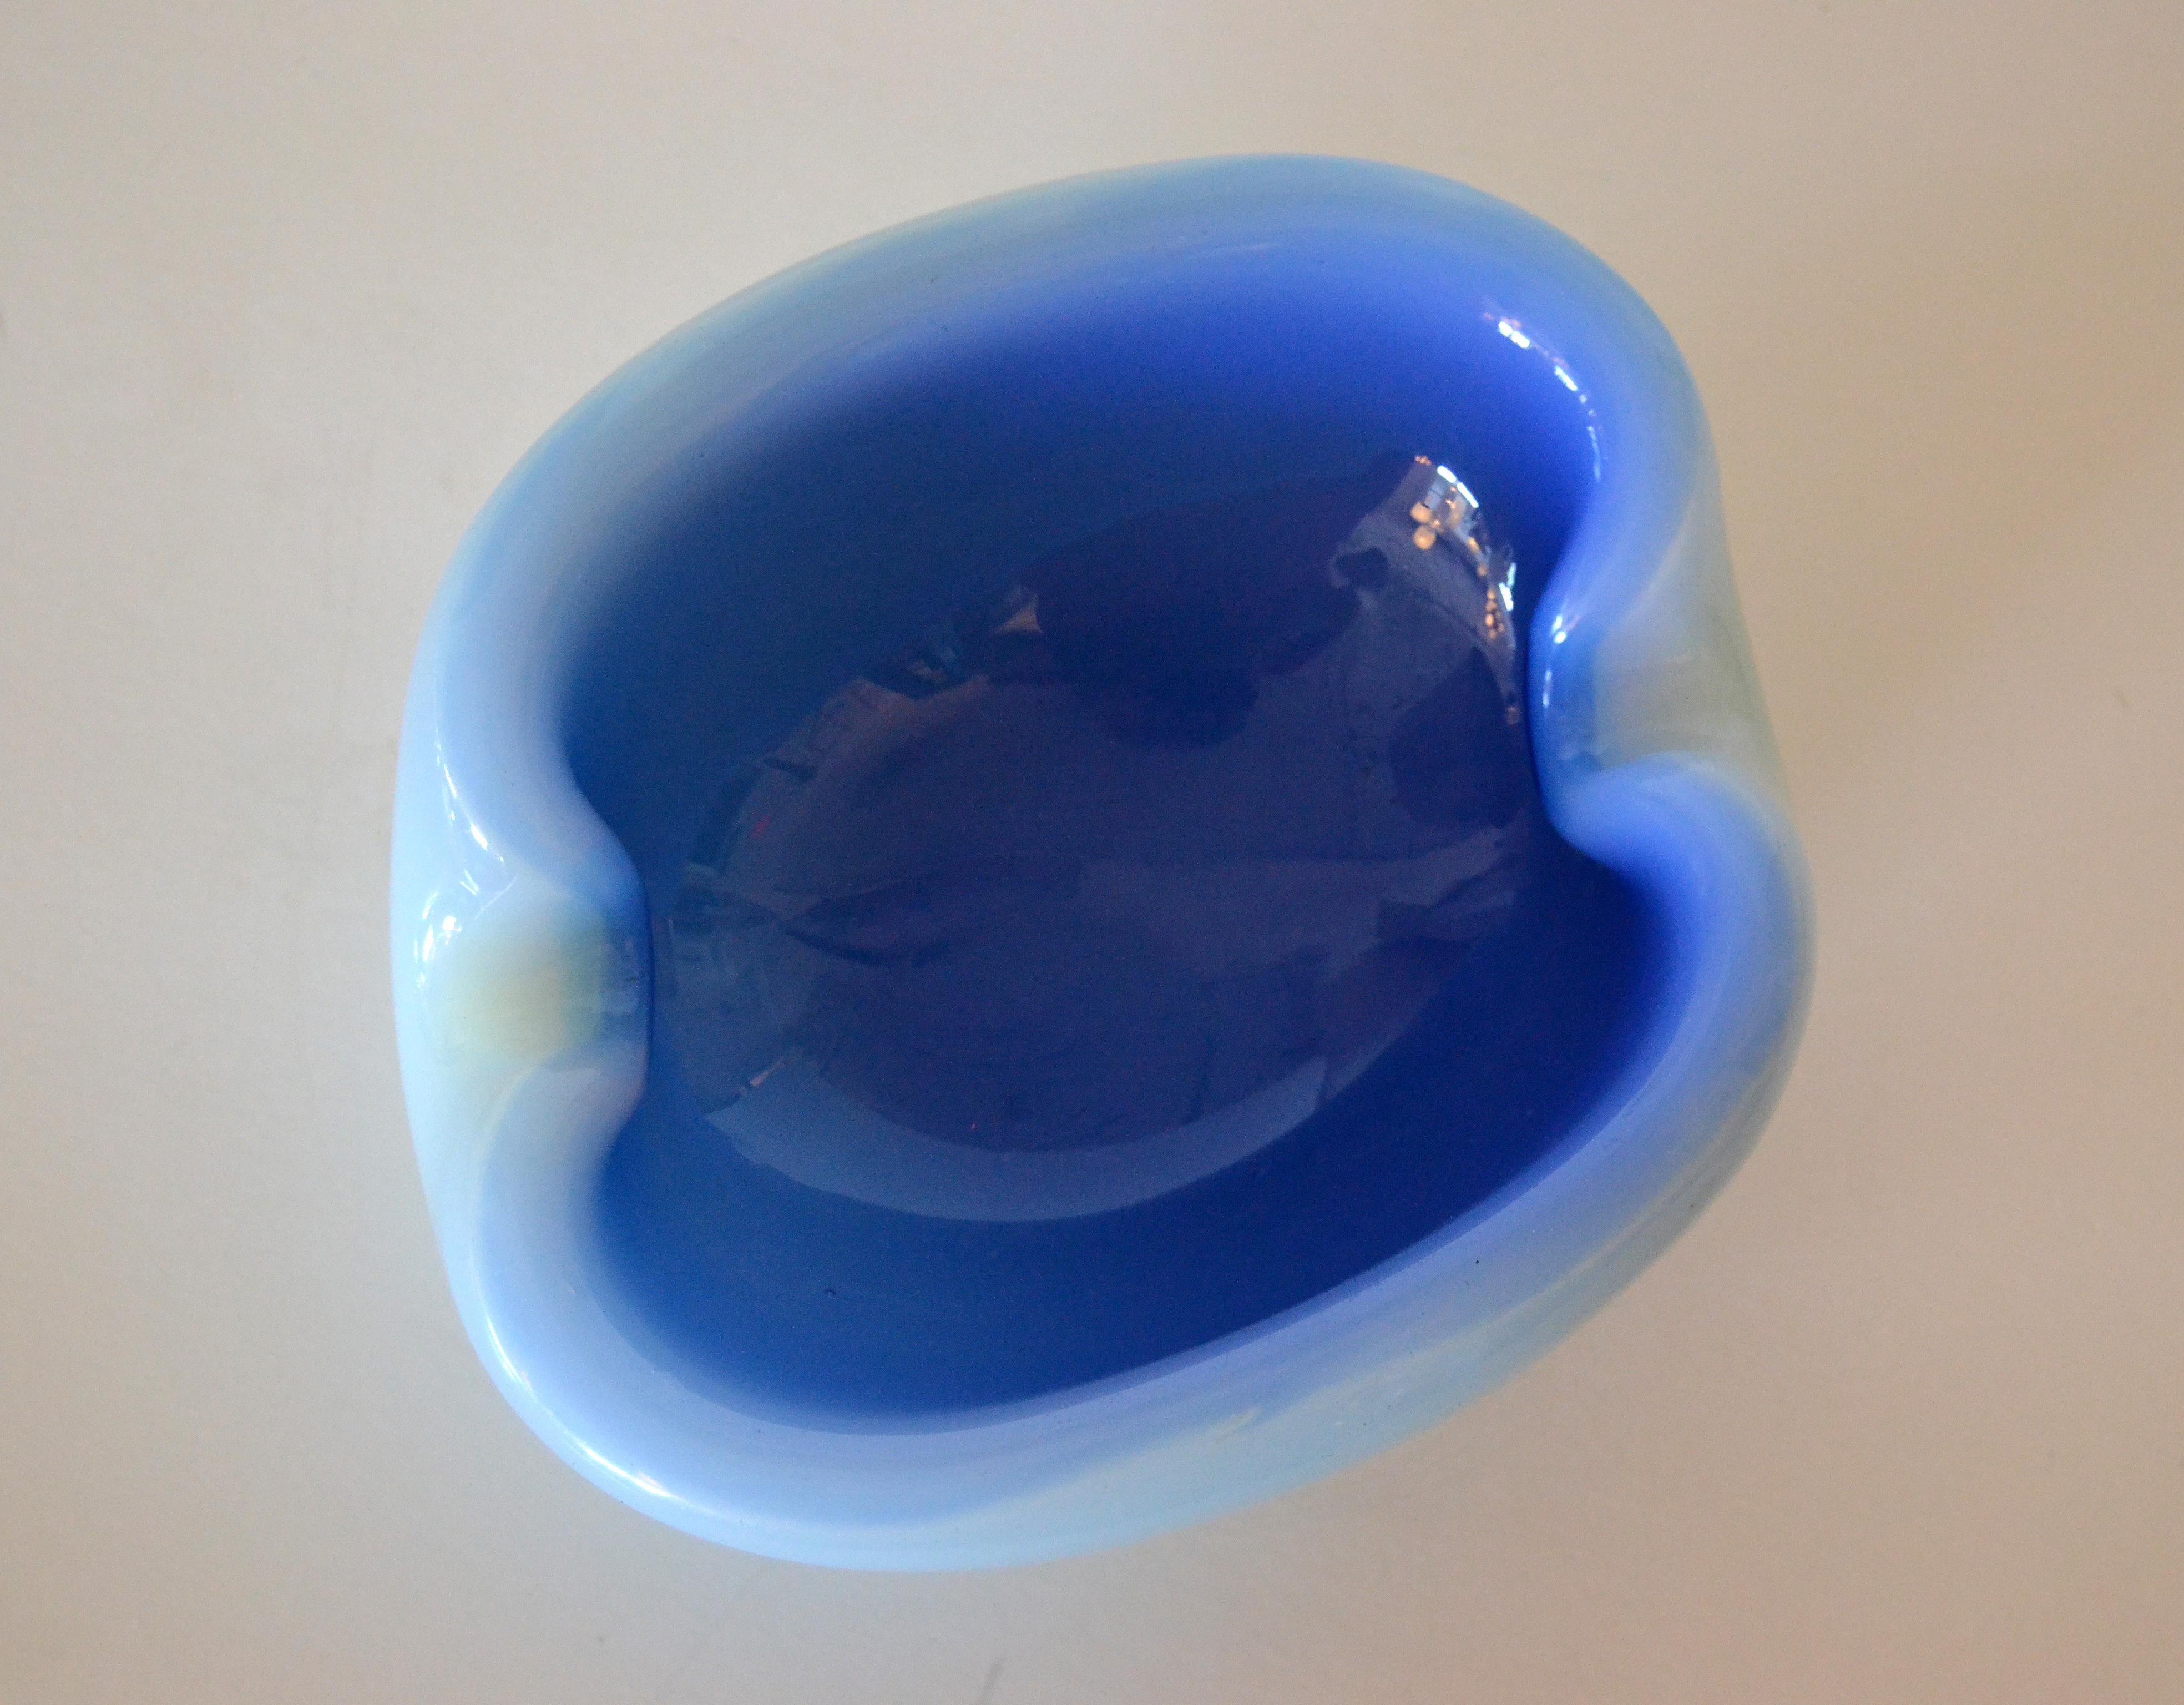 Coupe ronde en verre soufflé italien de Murano de couleur bleue bicolore.
Intérieur bleu turquoise à l'aspect organique, enveloppe extérieure bleu clair.
Tout simplement magnifique.